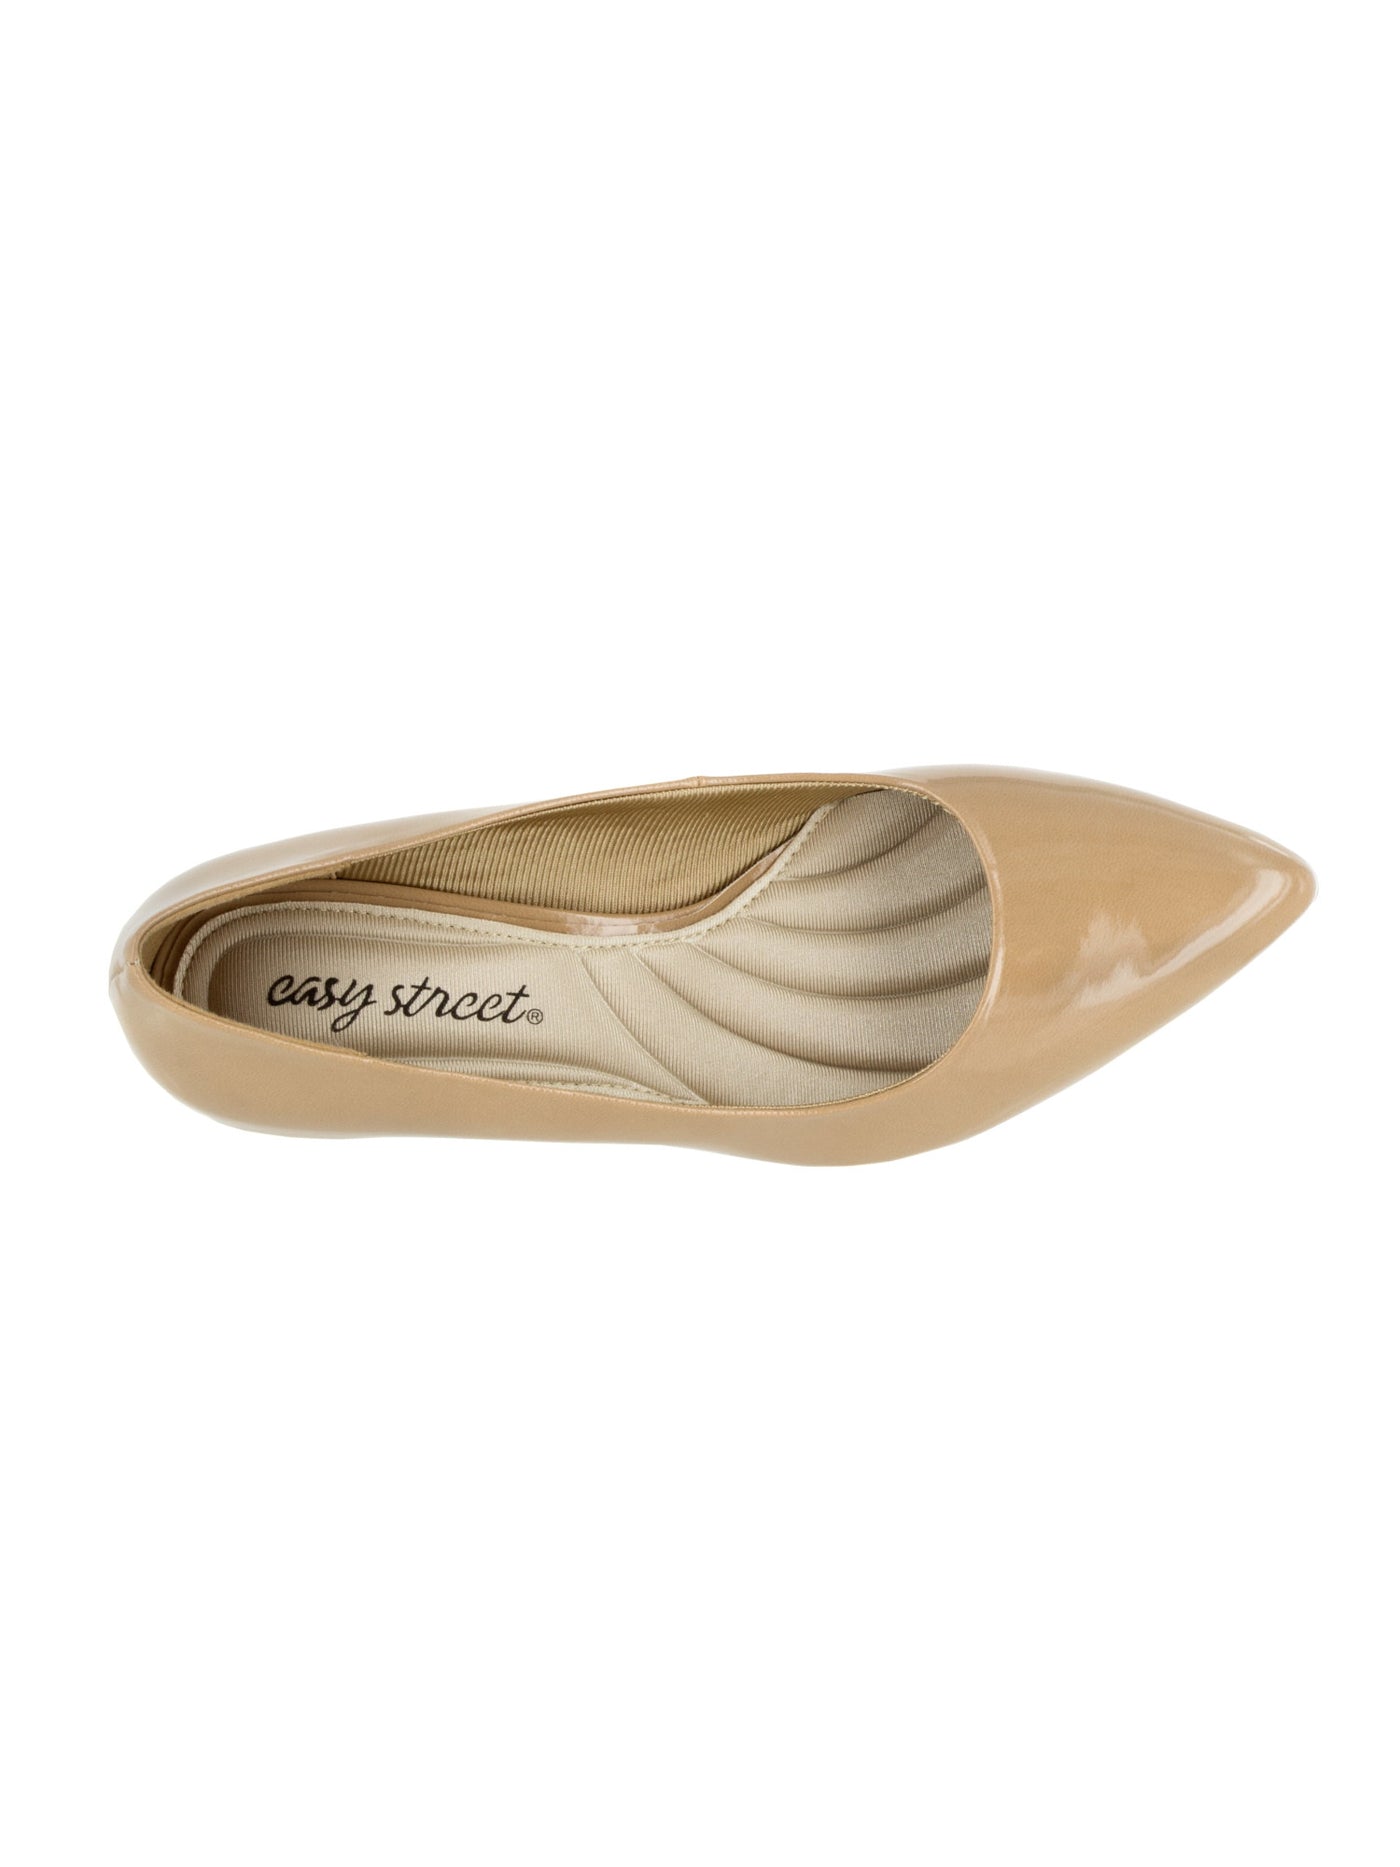 EASY STREET Womens Beige Padded Comfort Pointe Pointed Toe Kitten Heel Slip On Dress Pumps Shoes 7.5 W